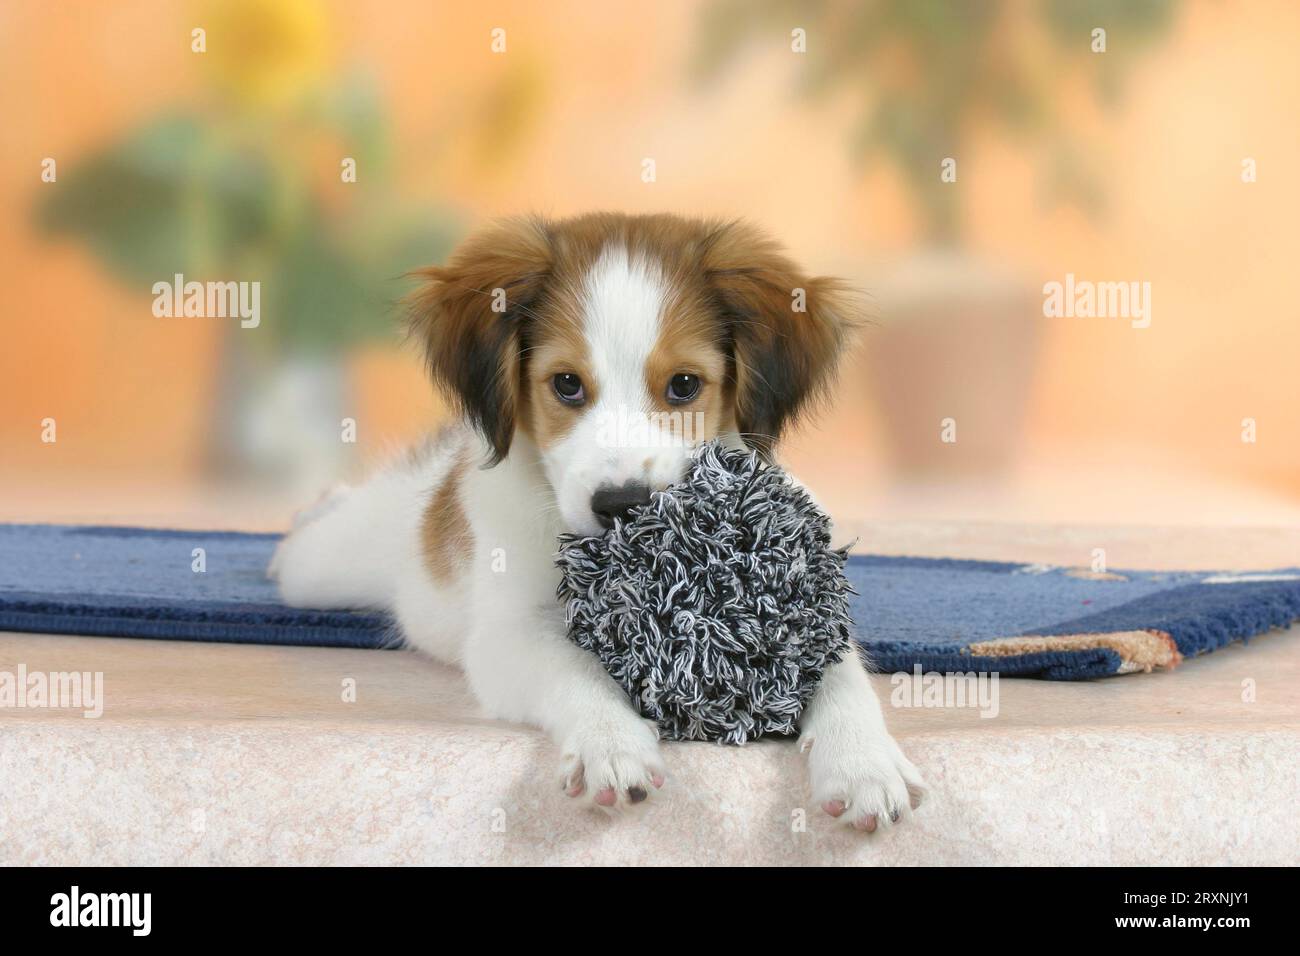 Kooikerhondje, puppy, 3 months, with toys Stock Photo